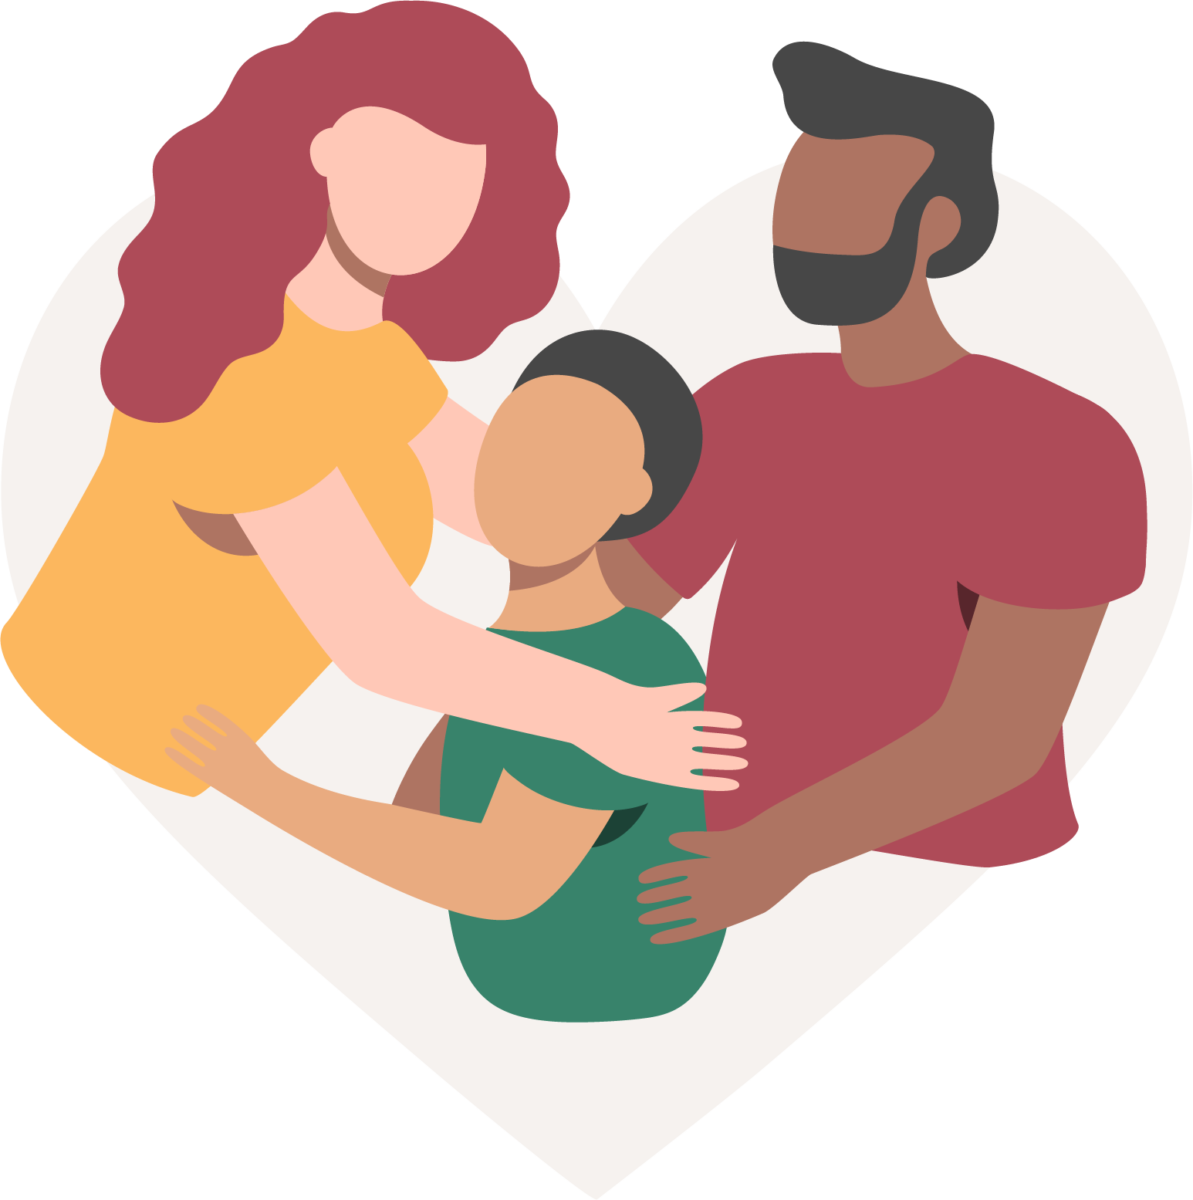 una donna con i capelli rossi e la camicia gialla e un uomo con i capelli e la barba neri abbracciano un bambino con la camicia verde e i capelli neri che rappresentano l'unità familiare